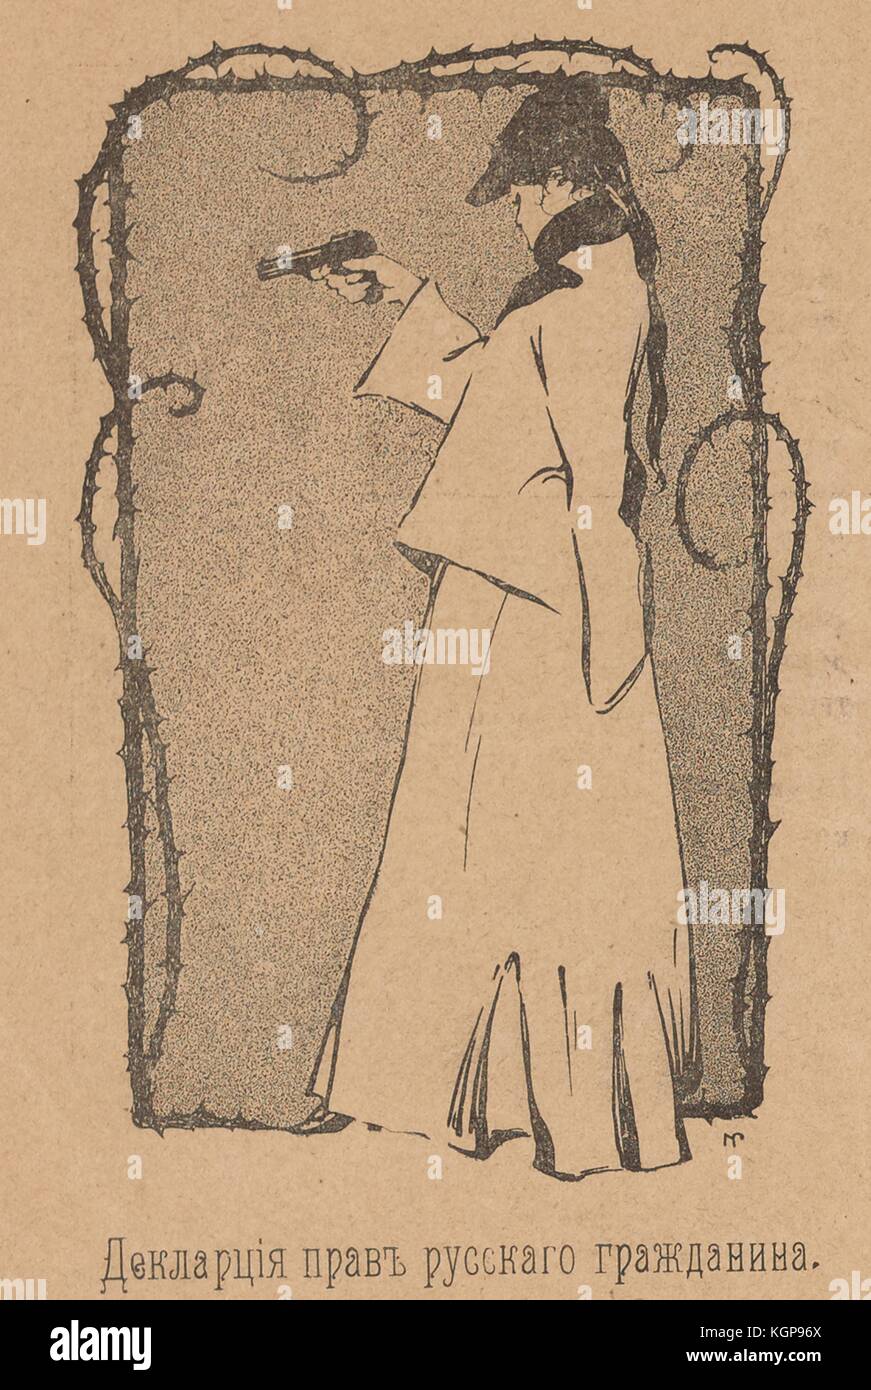 Illustration aus der russischen Satirezeitschrift Maski (Masken), die eine Frau zeigt, die eine Waffe mit dem Finger auf dem Abzug hält, mit Text: 'Erklärung der Rechte russischer Bürger', 1906. Stockfoto